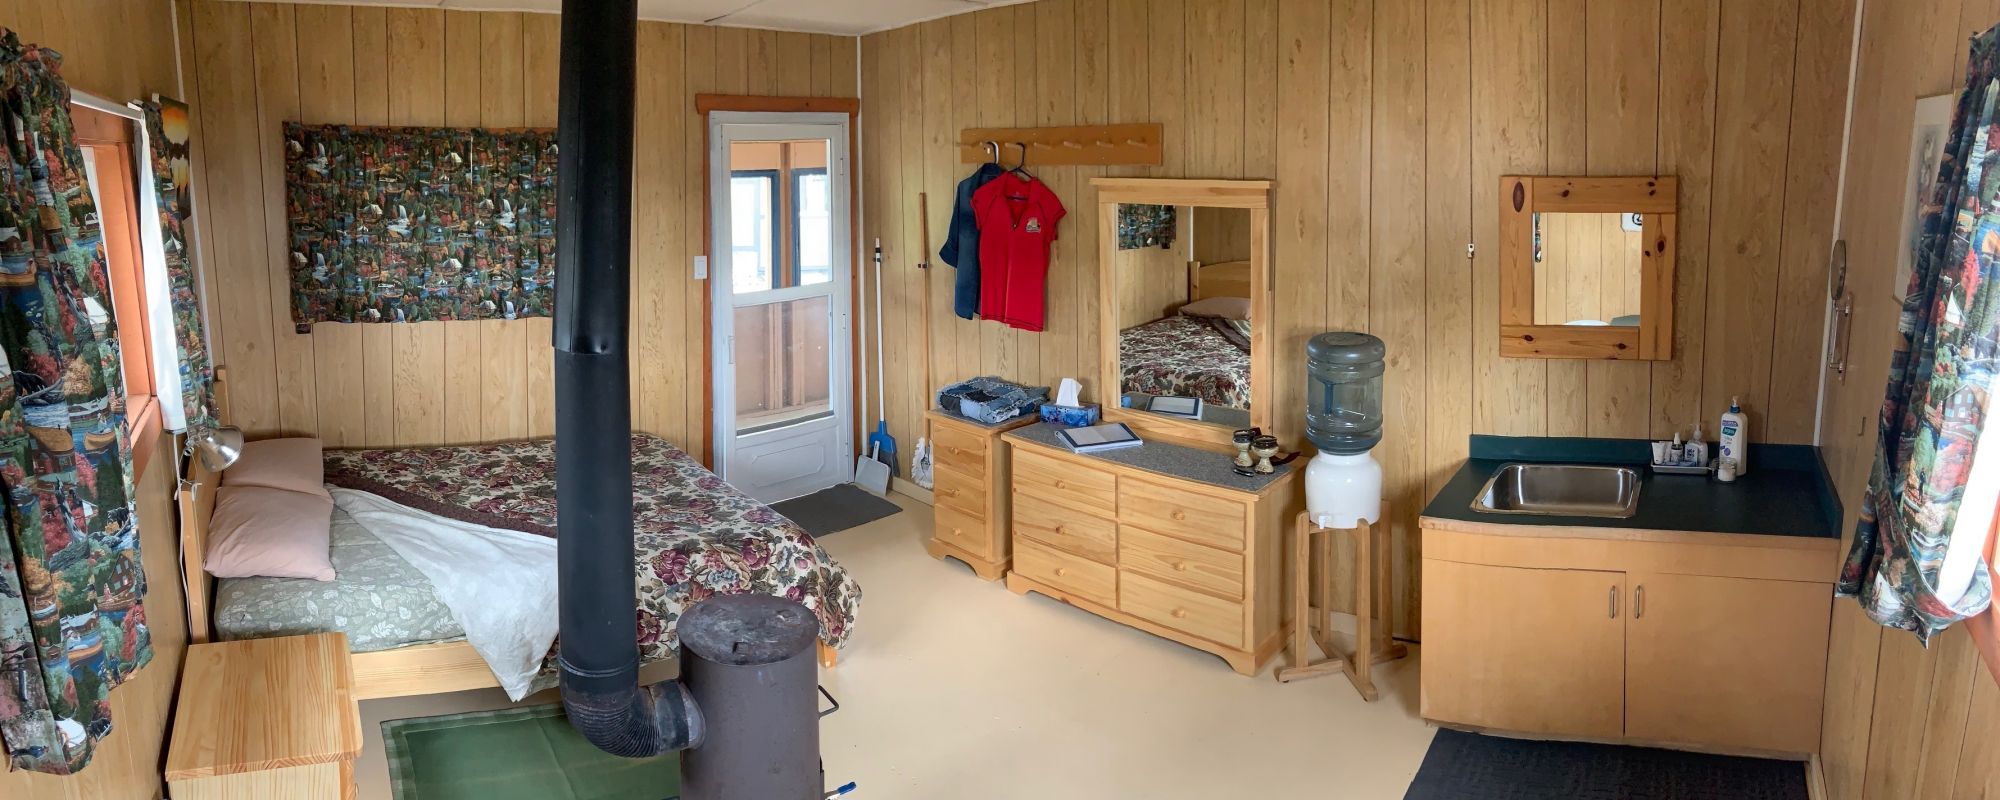 Inside Cabin Suite Queen bed and dresser, mirror and vanity